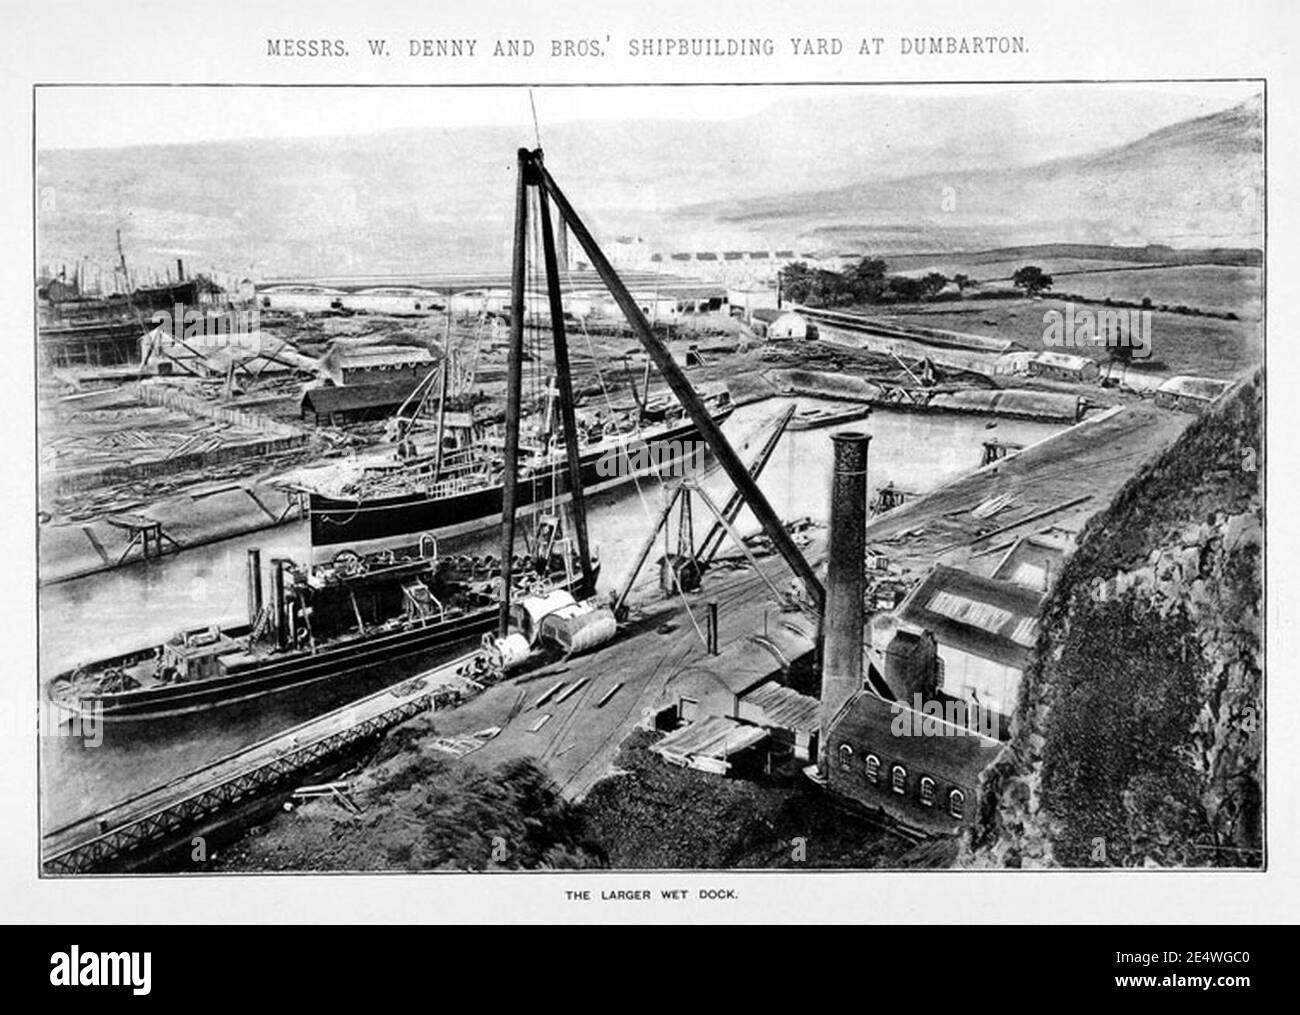 Messieurs W. Benny & Bross' Shipbuilding Yard à Dumbarton - le plus grand quai humide. Banque D'Images